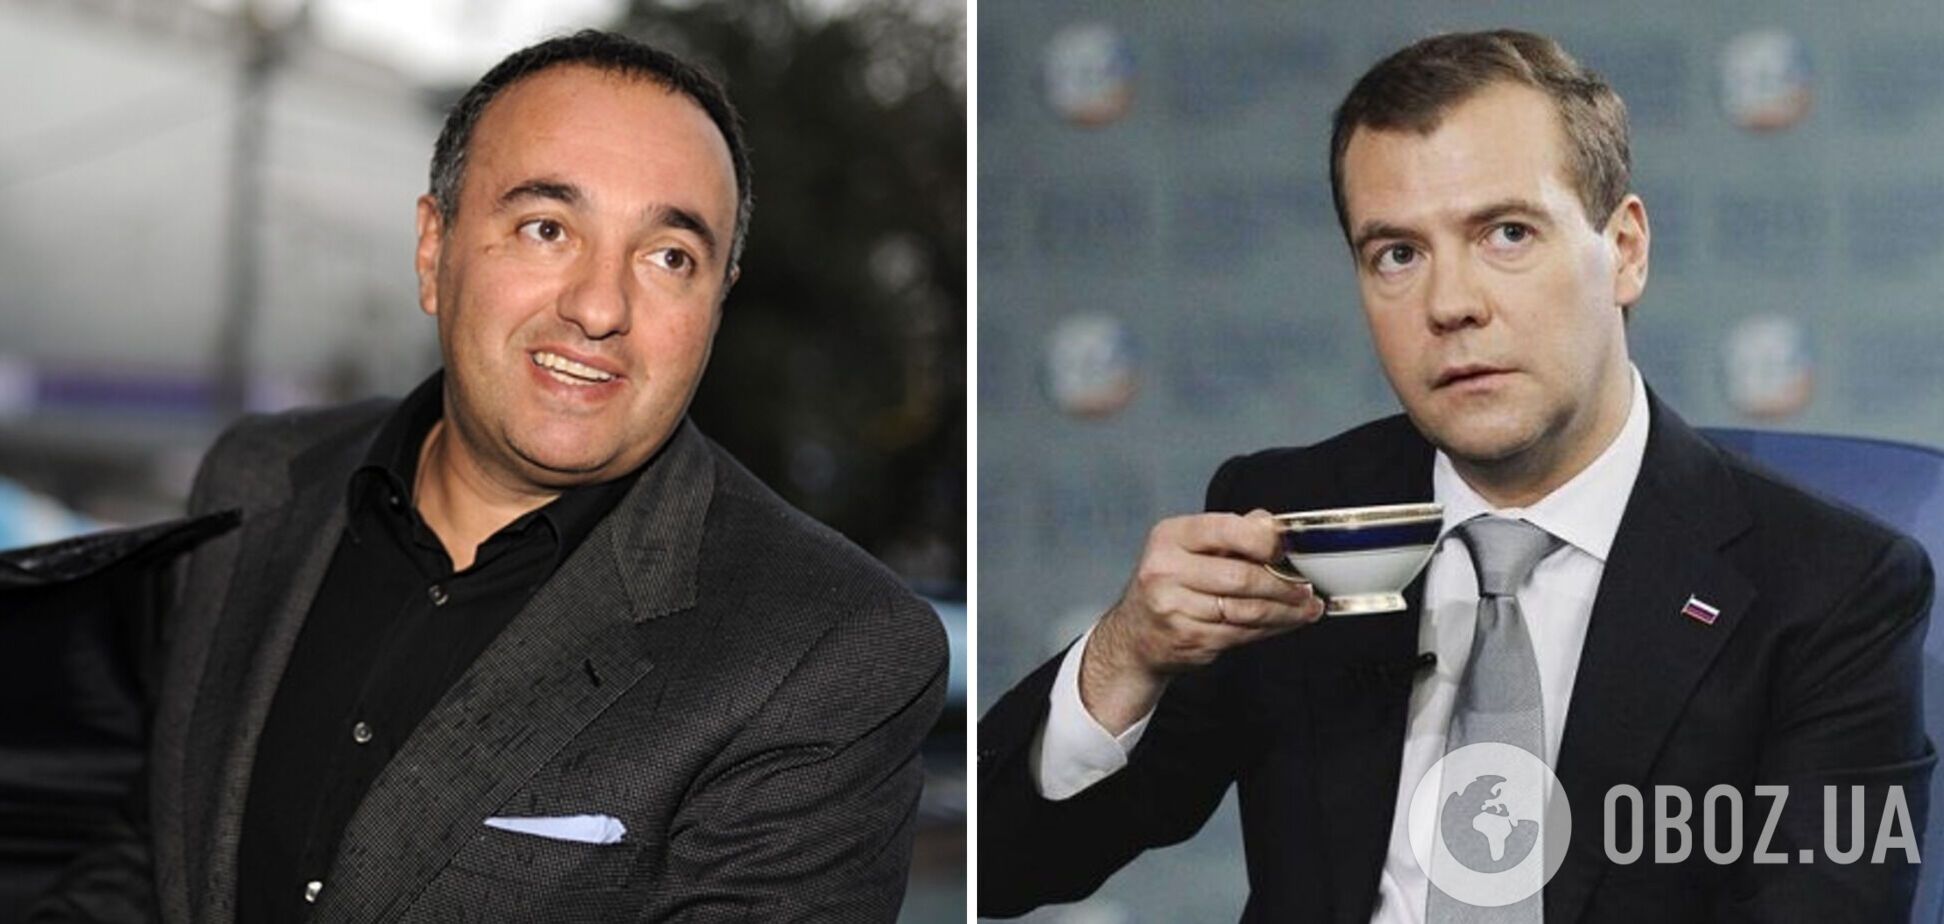 Роднянский назвал Медведева животным: раньше я думал, что он пьет боярышник. Сейчас – что стекломойные средства